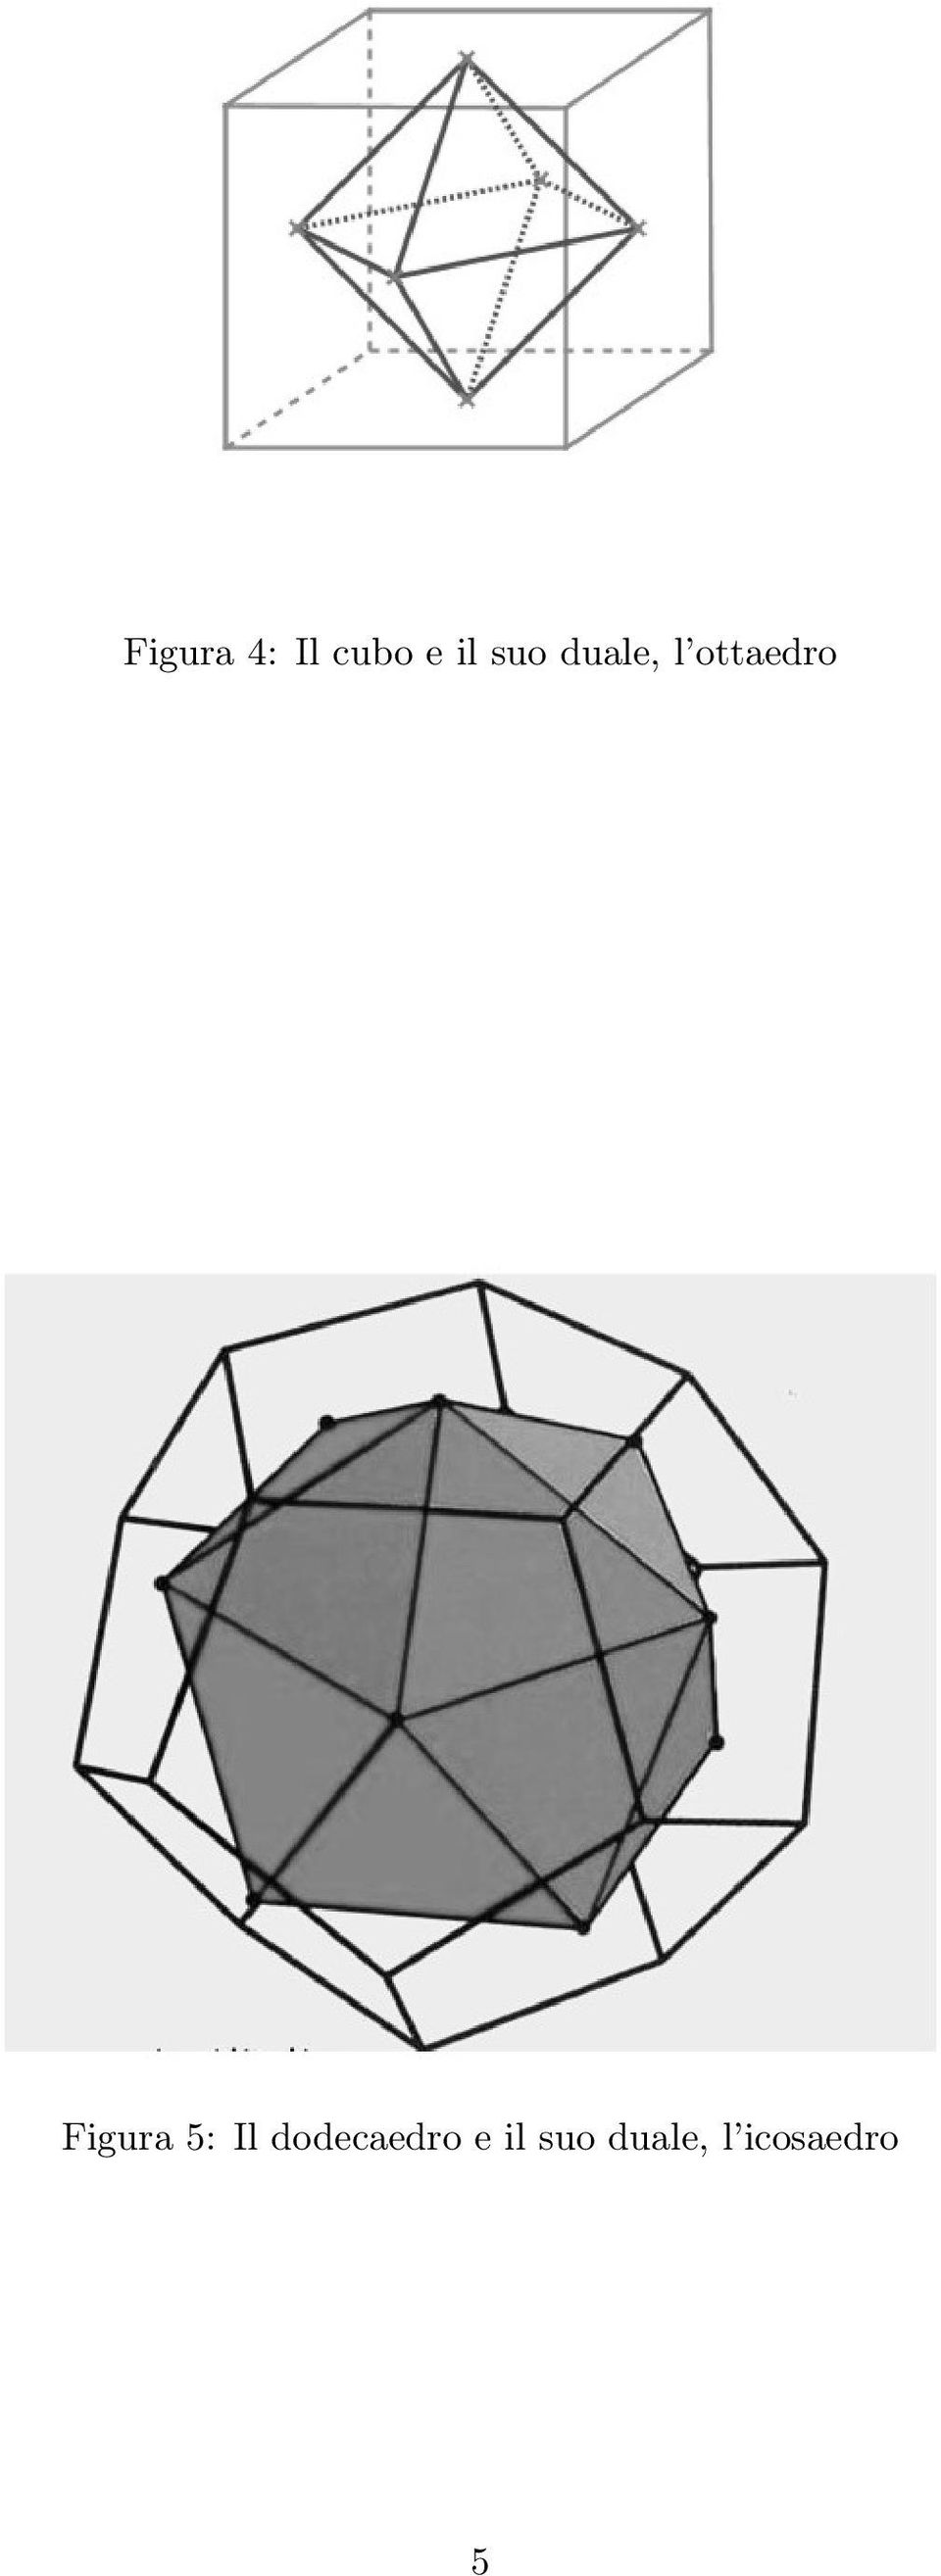 Figura 5: Il dodecaedro